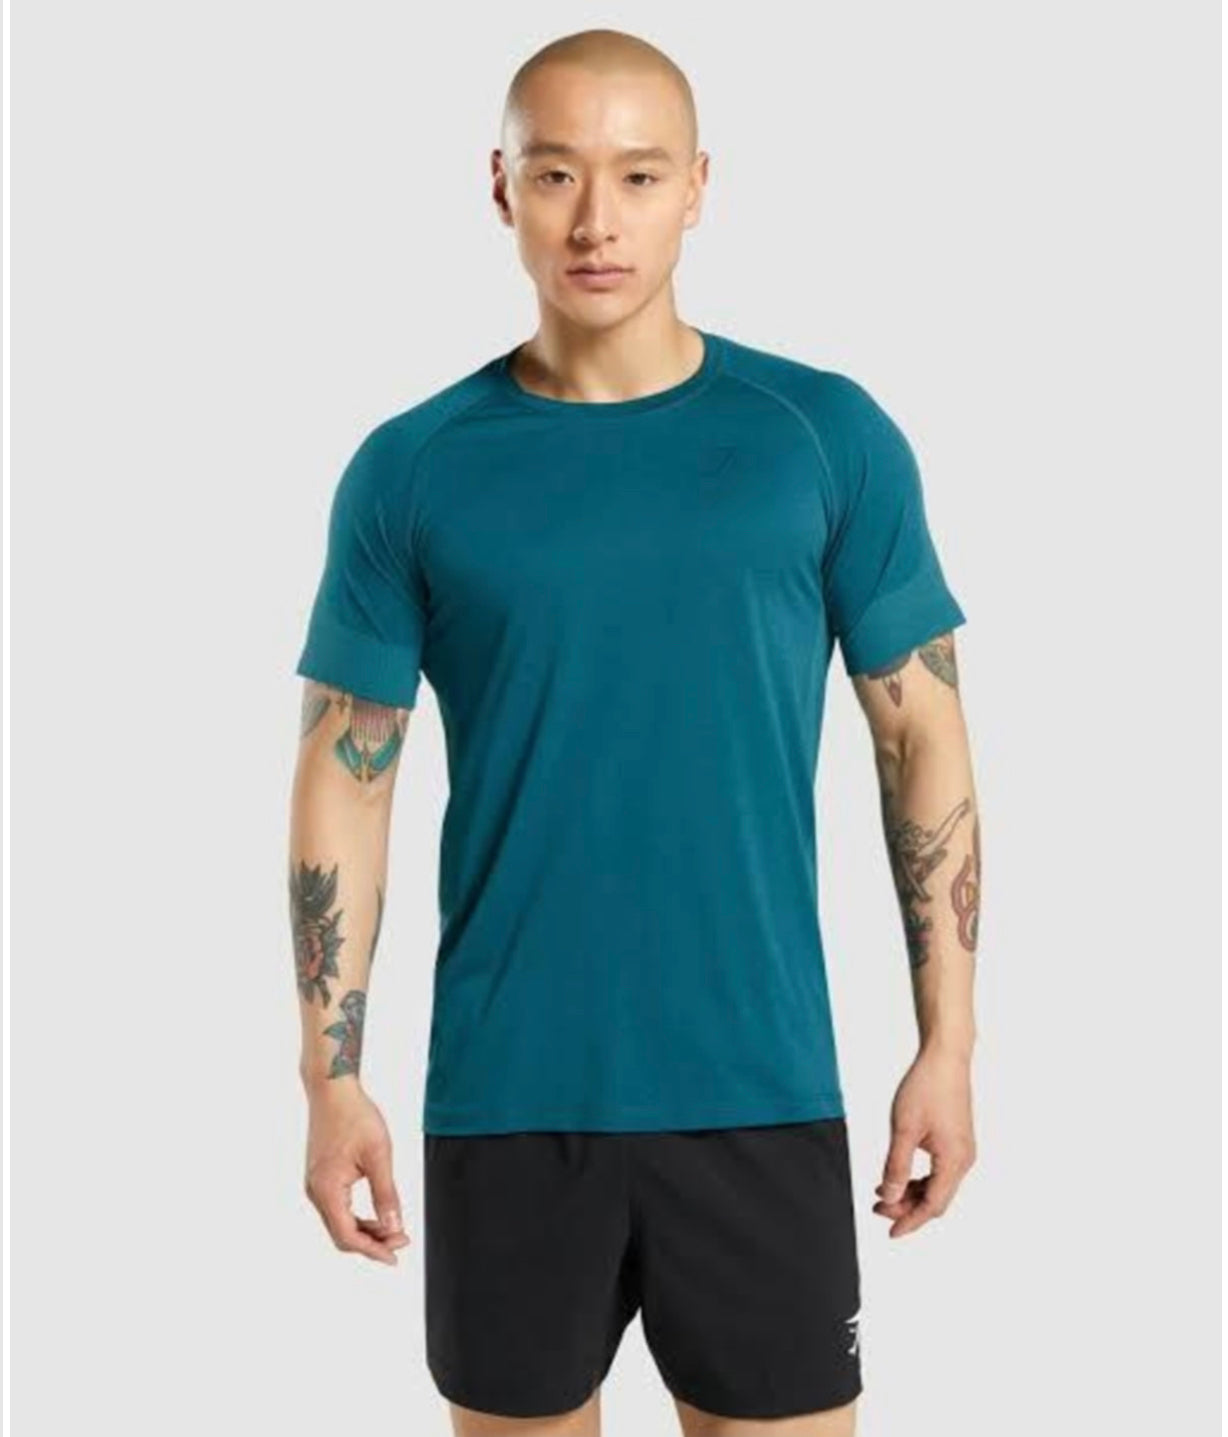 Gymshark Regulate Training Men’s T-Shirt